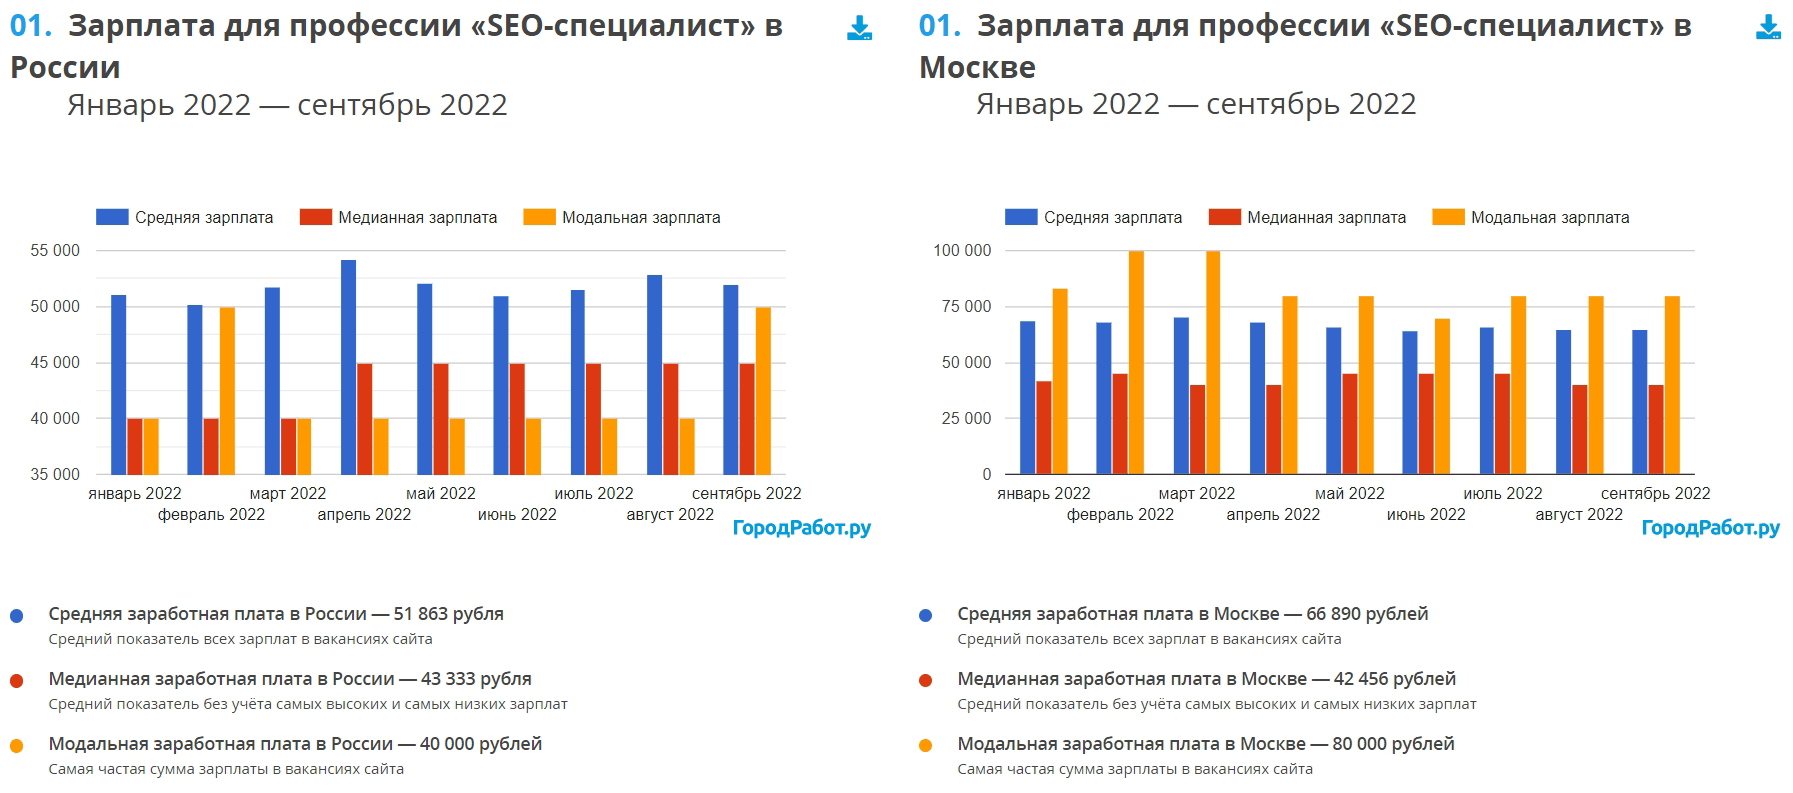 Средняя зарплата SEO-специалиста в России и в Москве